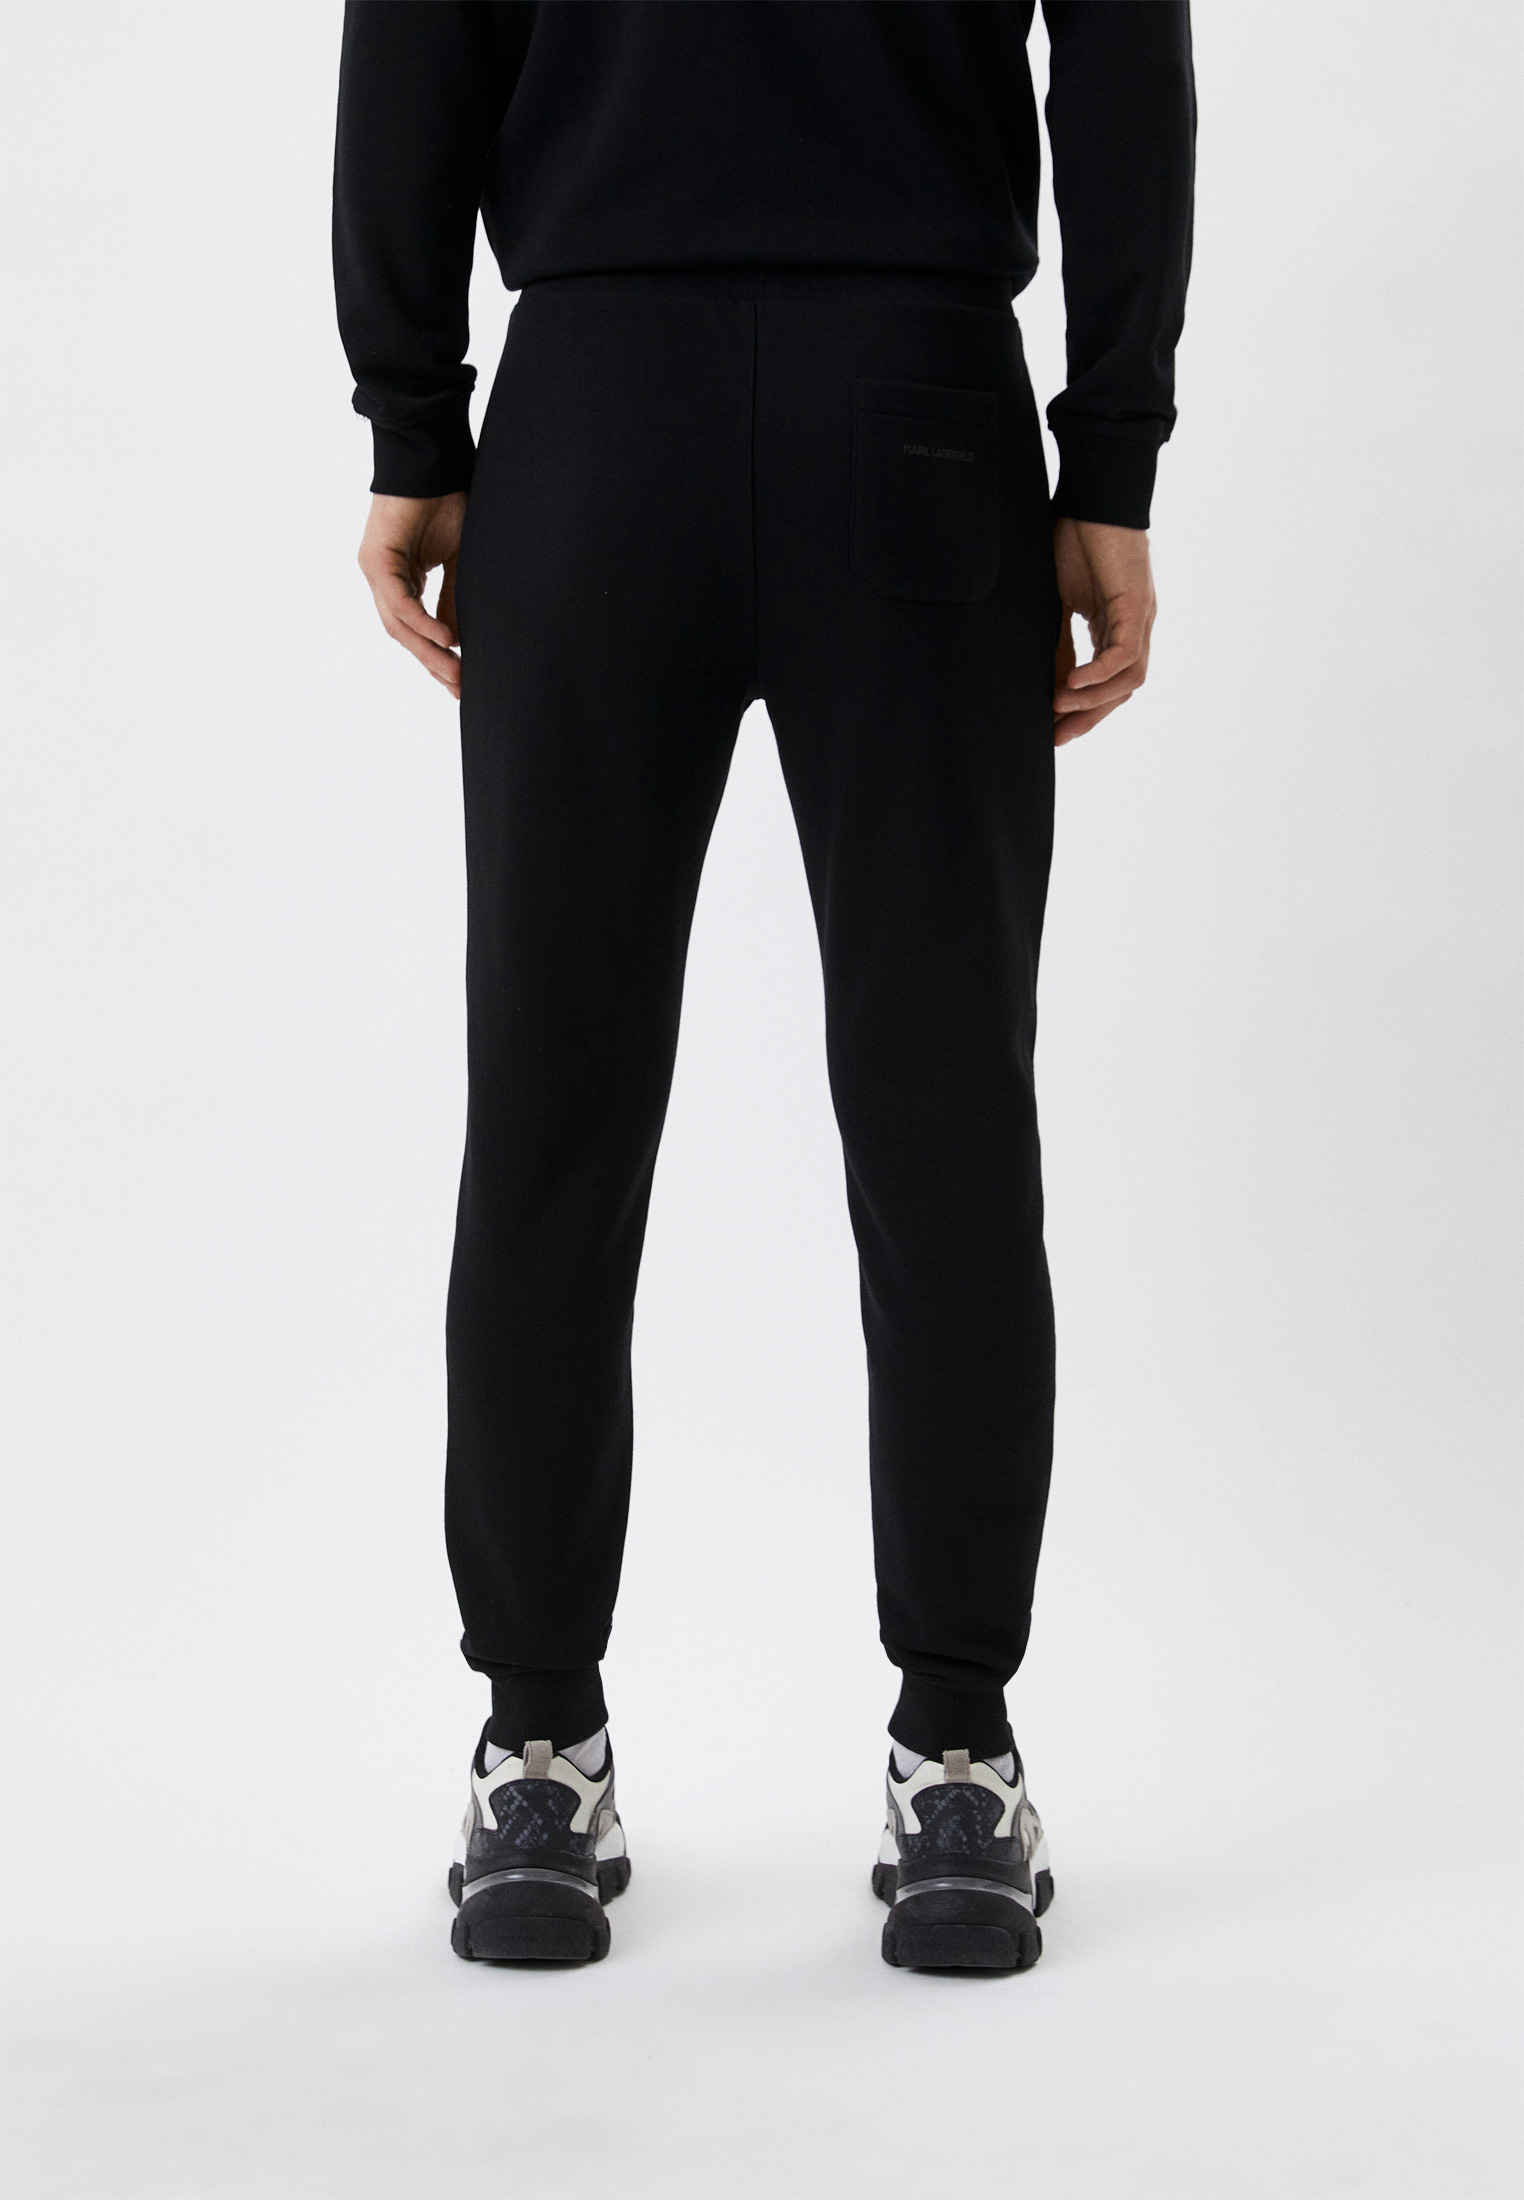 Мужские спортивные брюки Karl Lagerfeld (Карл Лагерфельд) 705093-531900: изображение 3